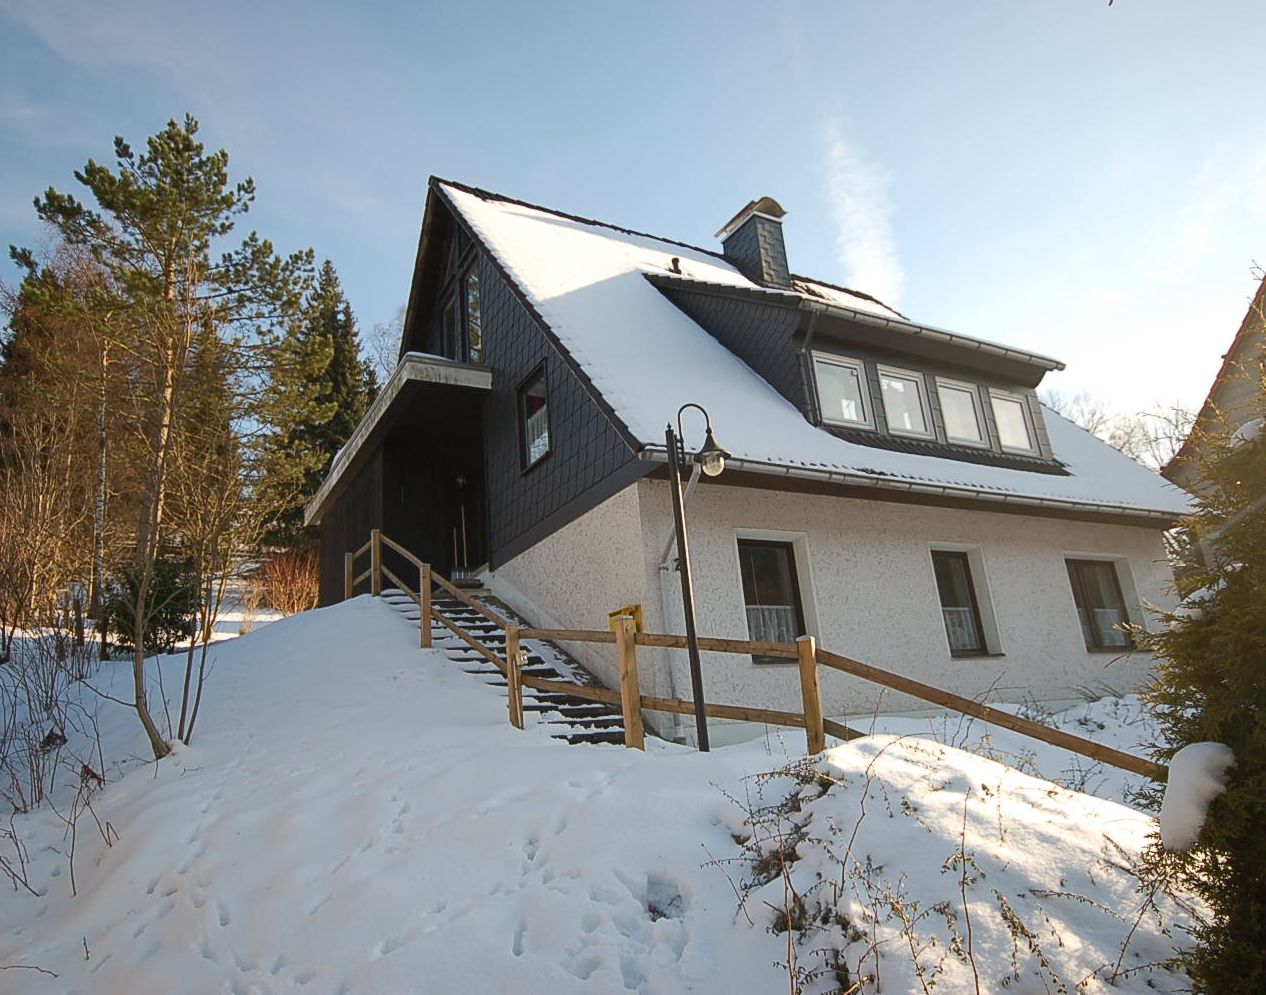 Auch im Winter ist das <b>Ferienhaus am Rothenberg in Altenau</b> ein ideales Urlaubsziel für die Familie. (Bild: Ch. Dreesen)